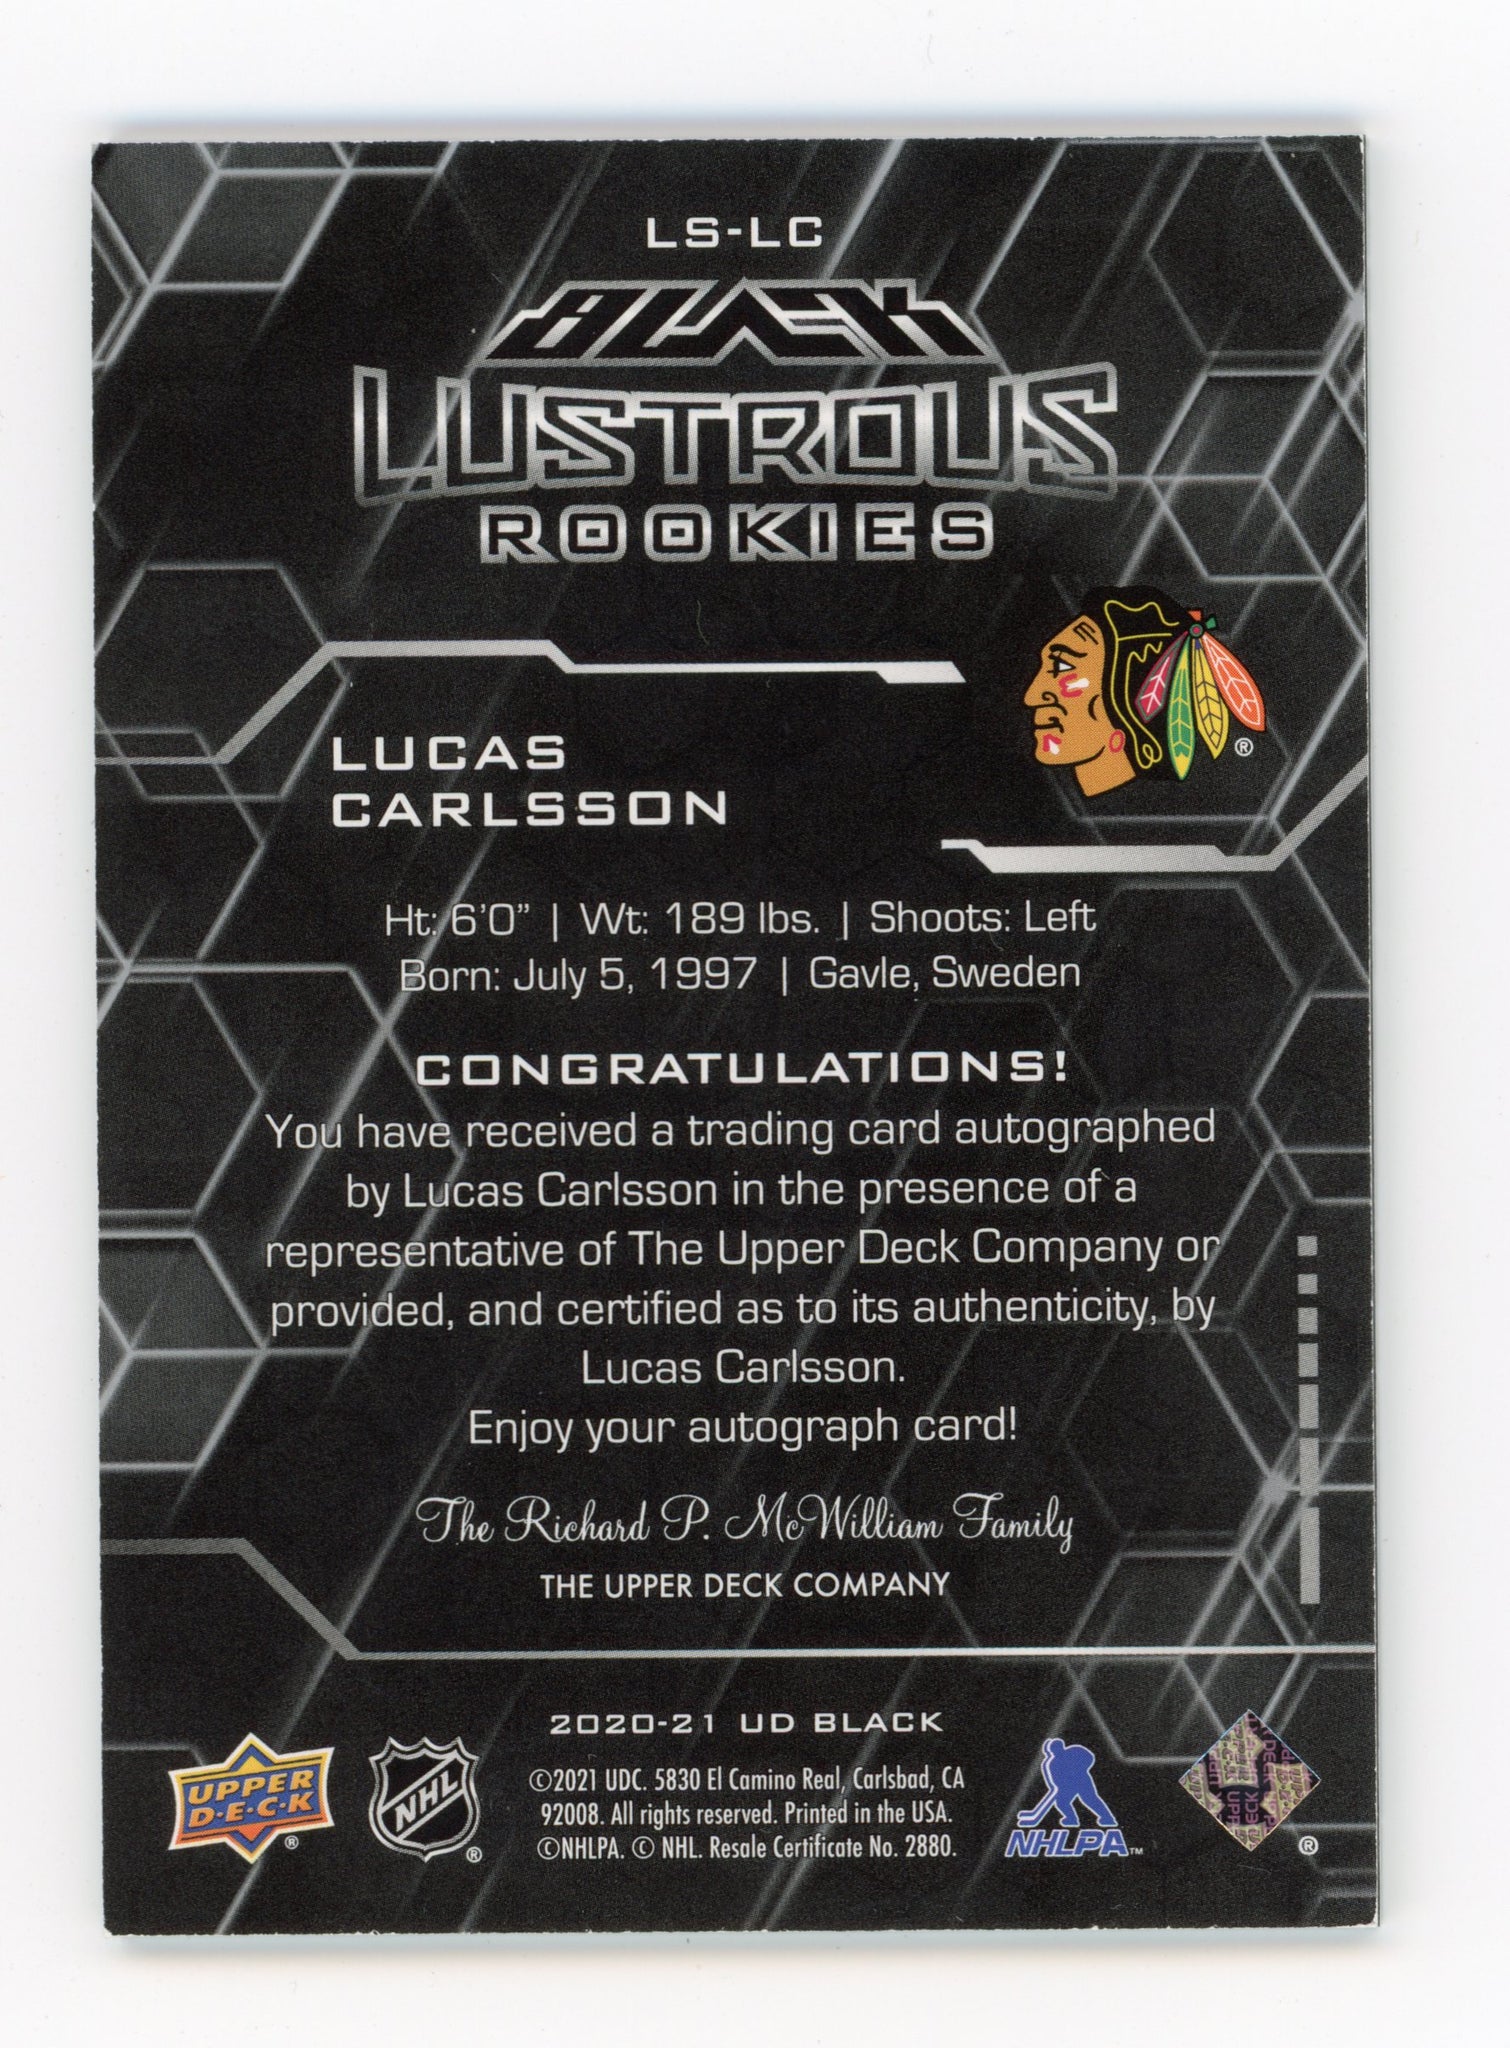 2020-2021 Lucas Carlsson Lustrous Rookie Autographed #d /299 Chicago Blackhawks # LS-LC